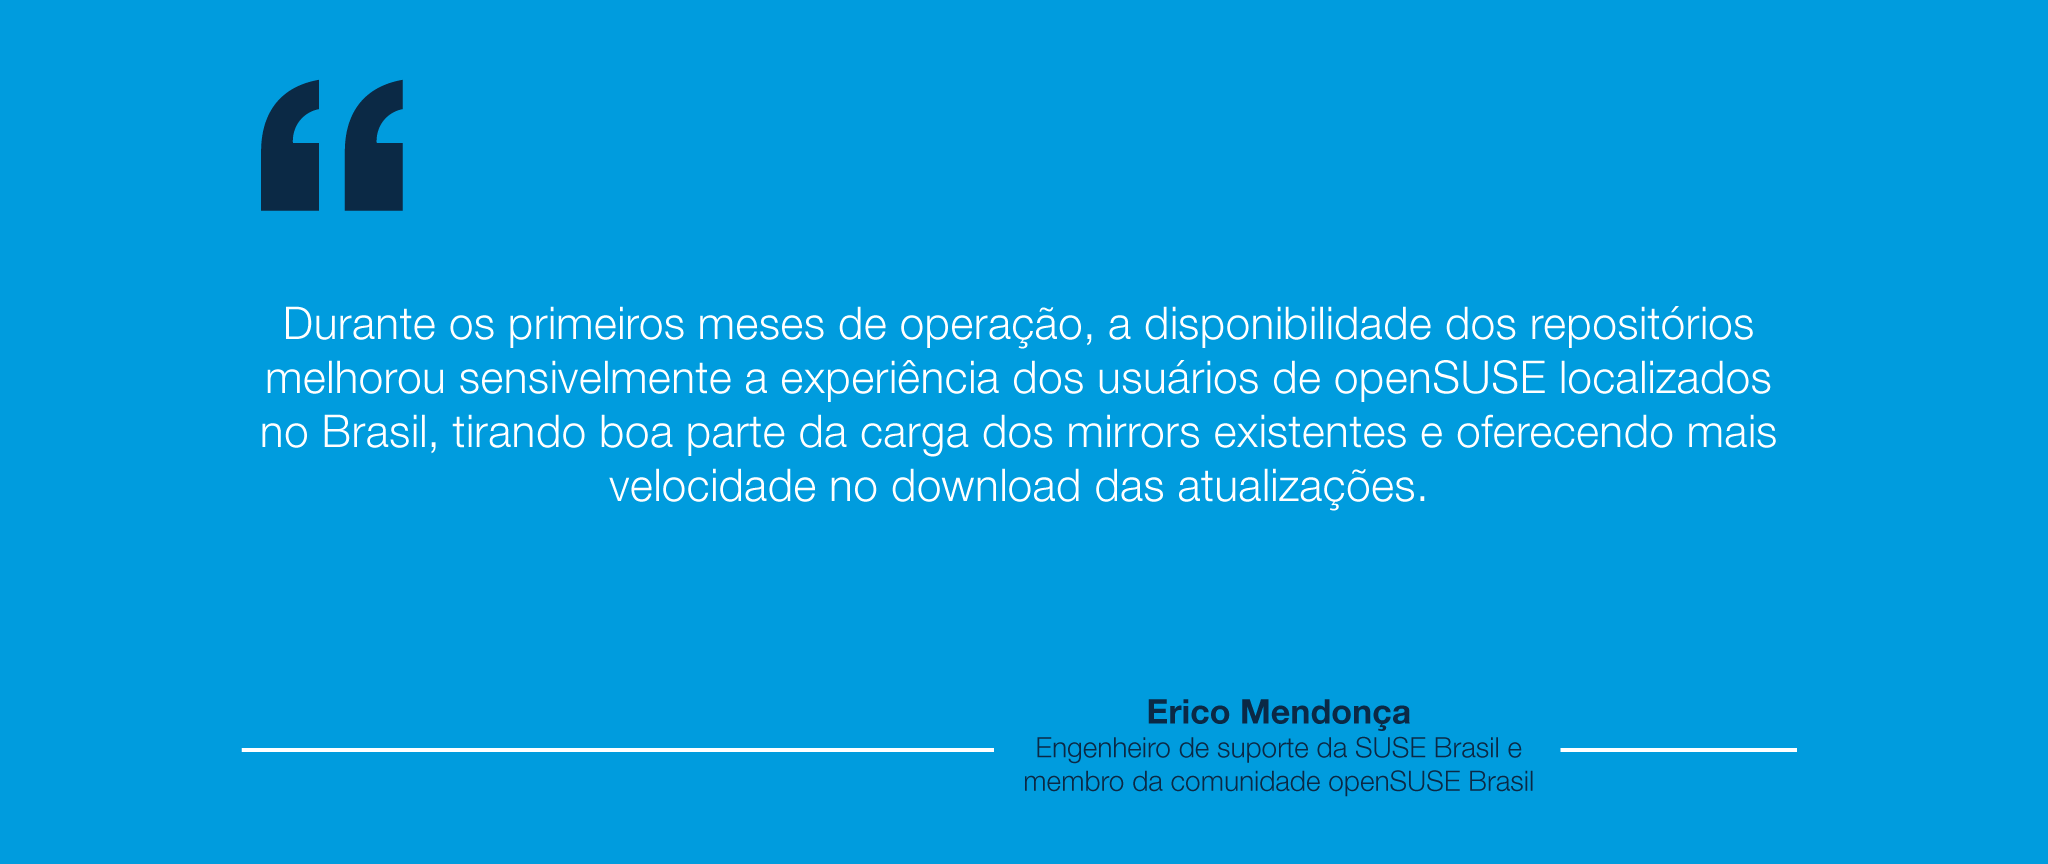 openSUSE-EricoMendonca